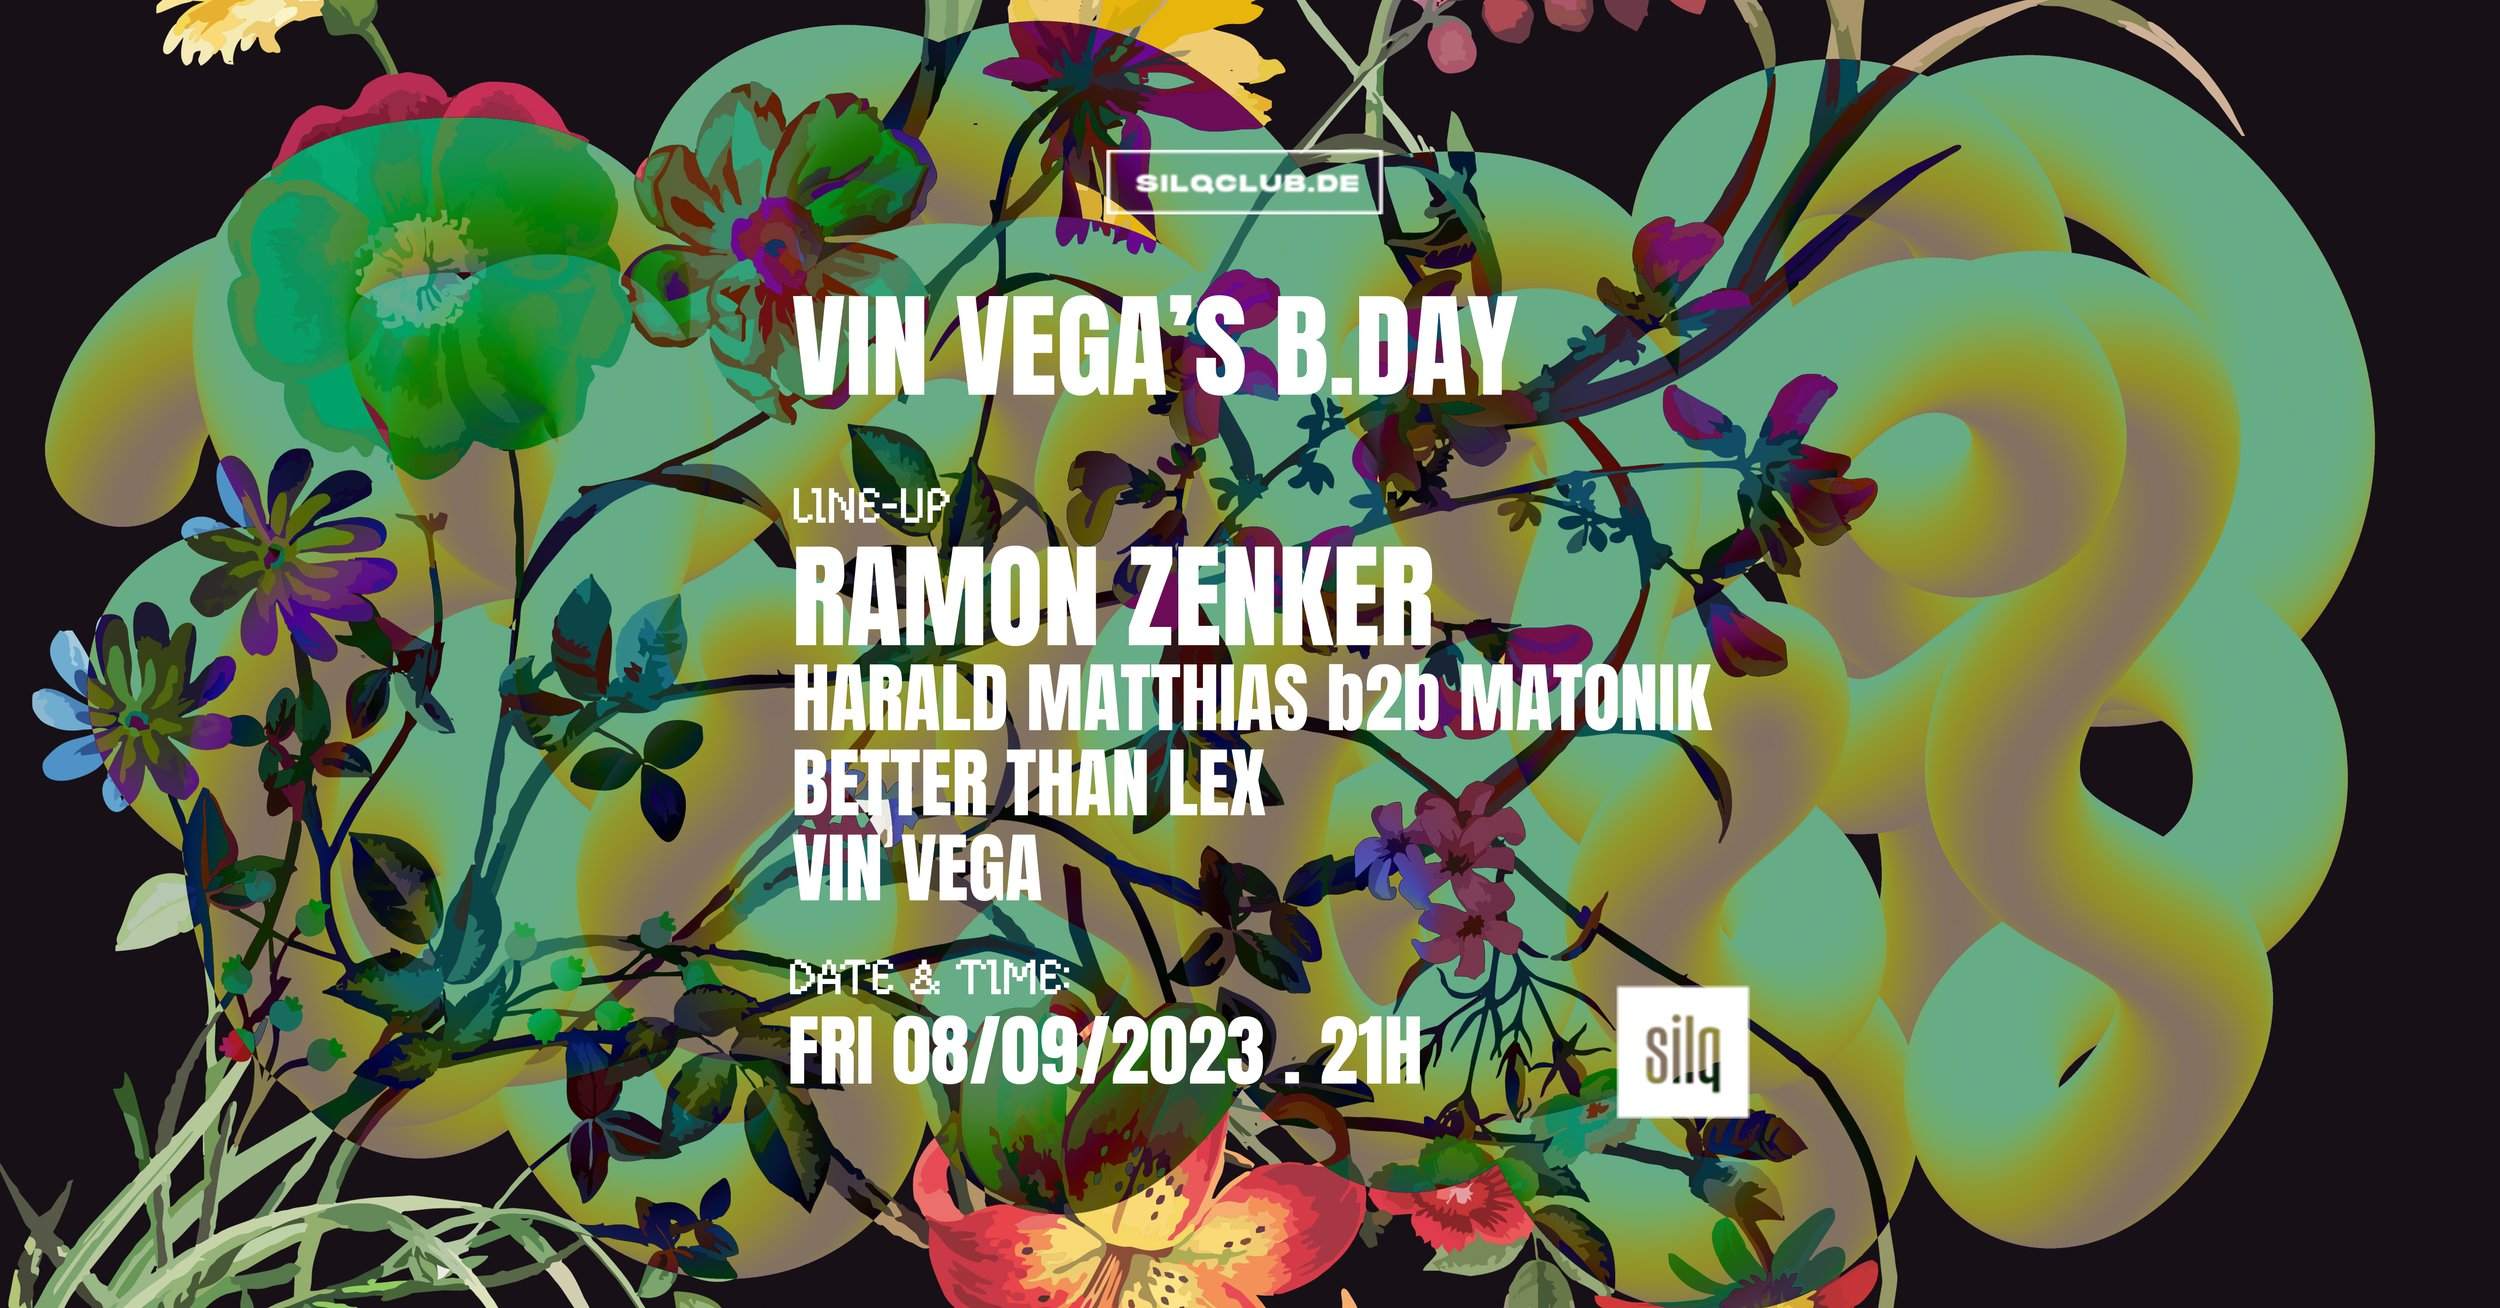 Vin Vega'S B.DAY with Ramon Zenker, Harald Matthias, Matonik, Better Than Lex, Vin Vega - フライヤー表